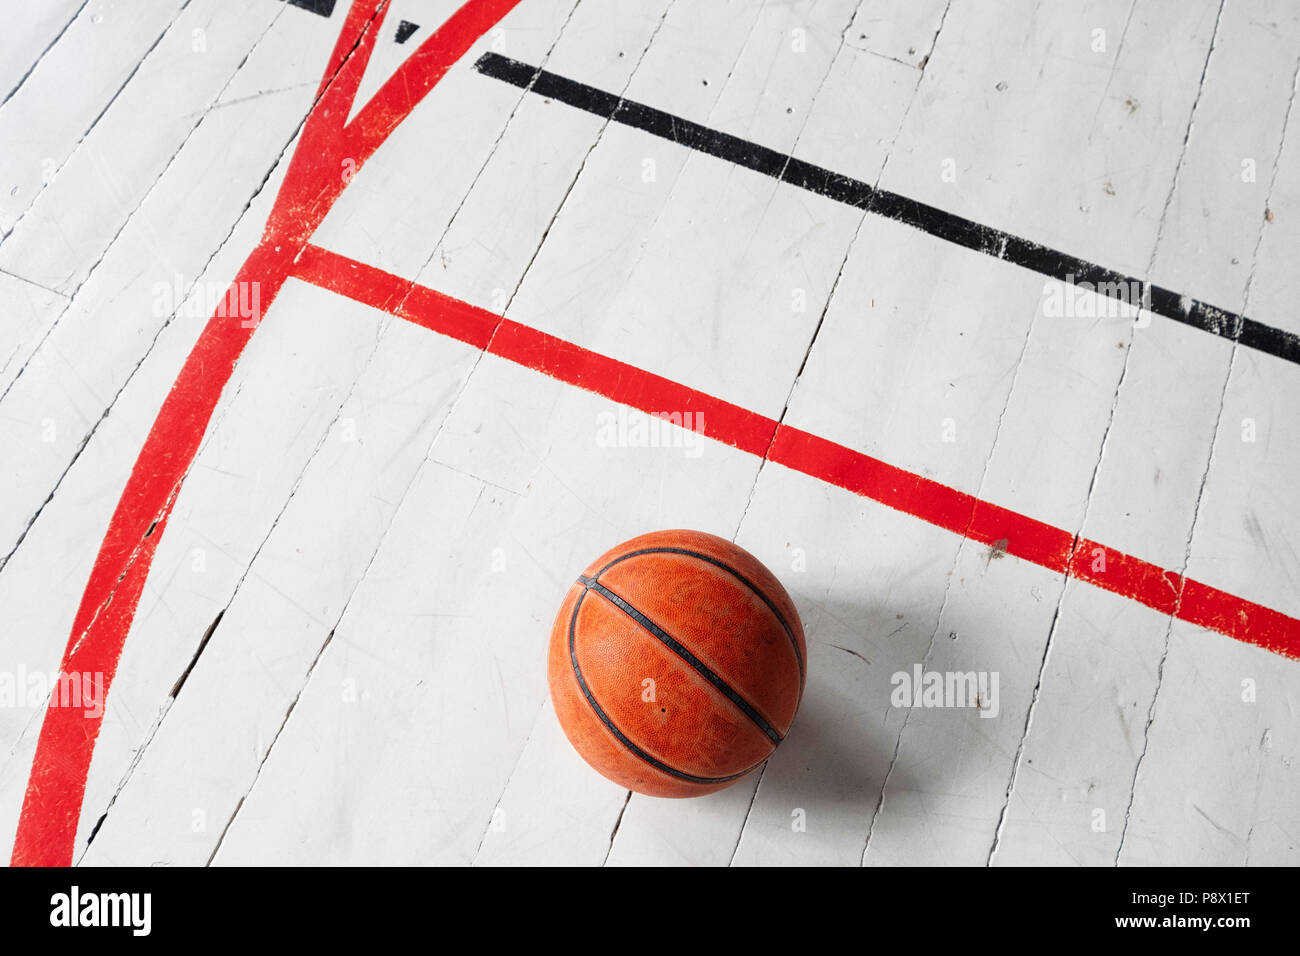 Détail d'un style ancien gymnase avec lignes de basket-ball Banque D'Images